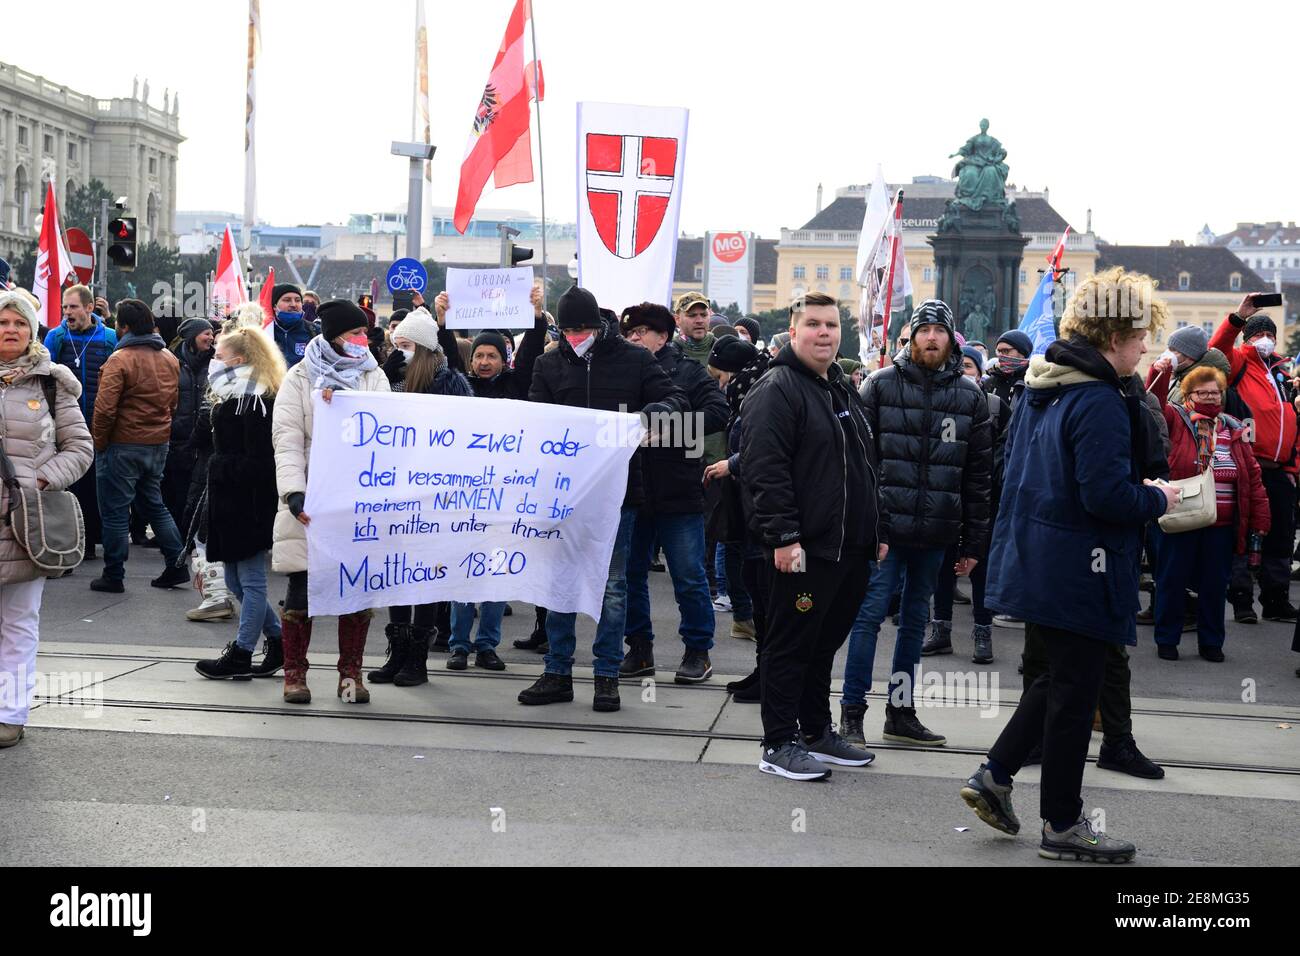 31 gennaio 2021. Vienna, Austria. Una manifestazione anti corona non registrata con diverse migliaia di persone è stata circondata e distretta dalla polizia. Foto Stock